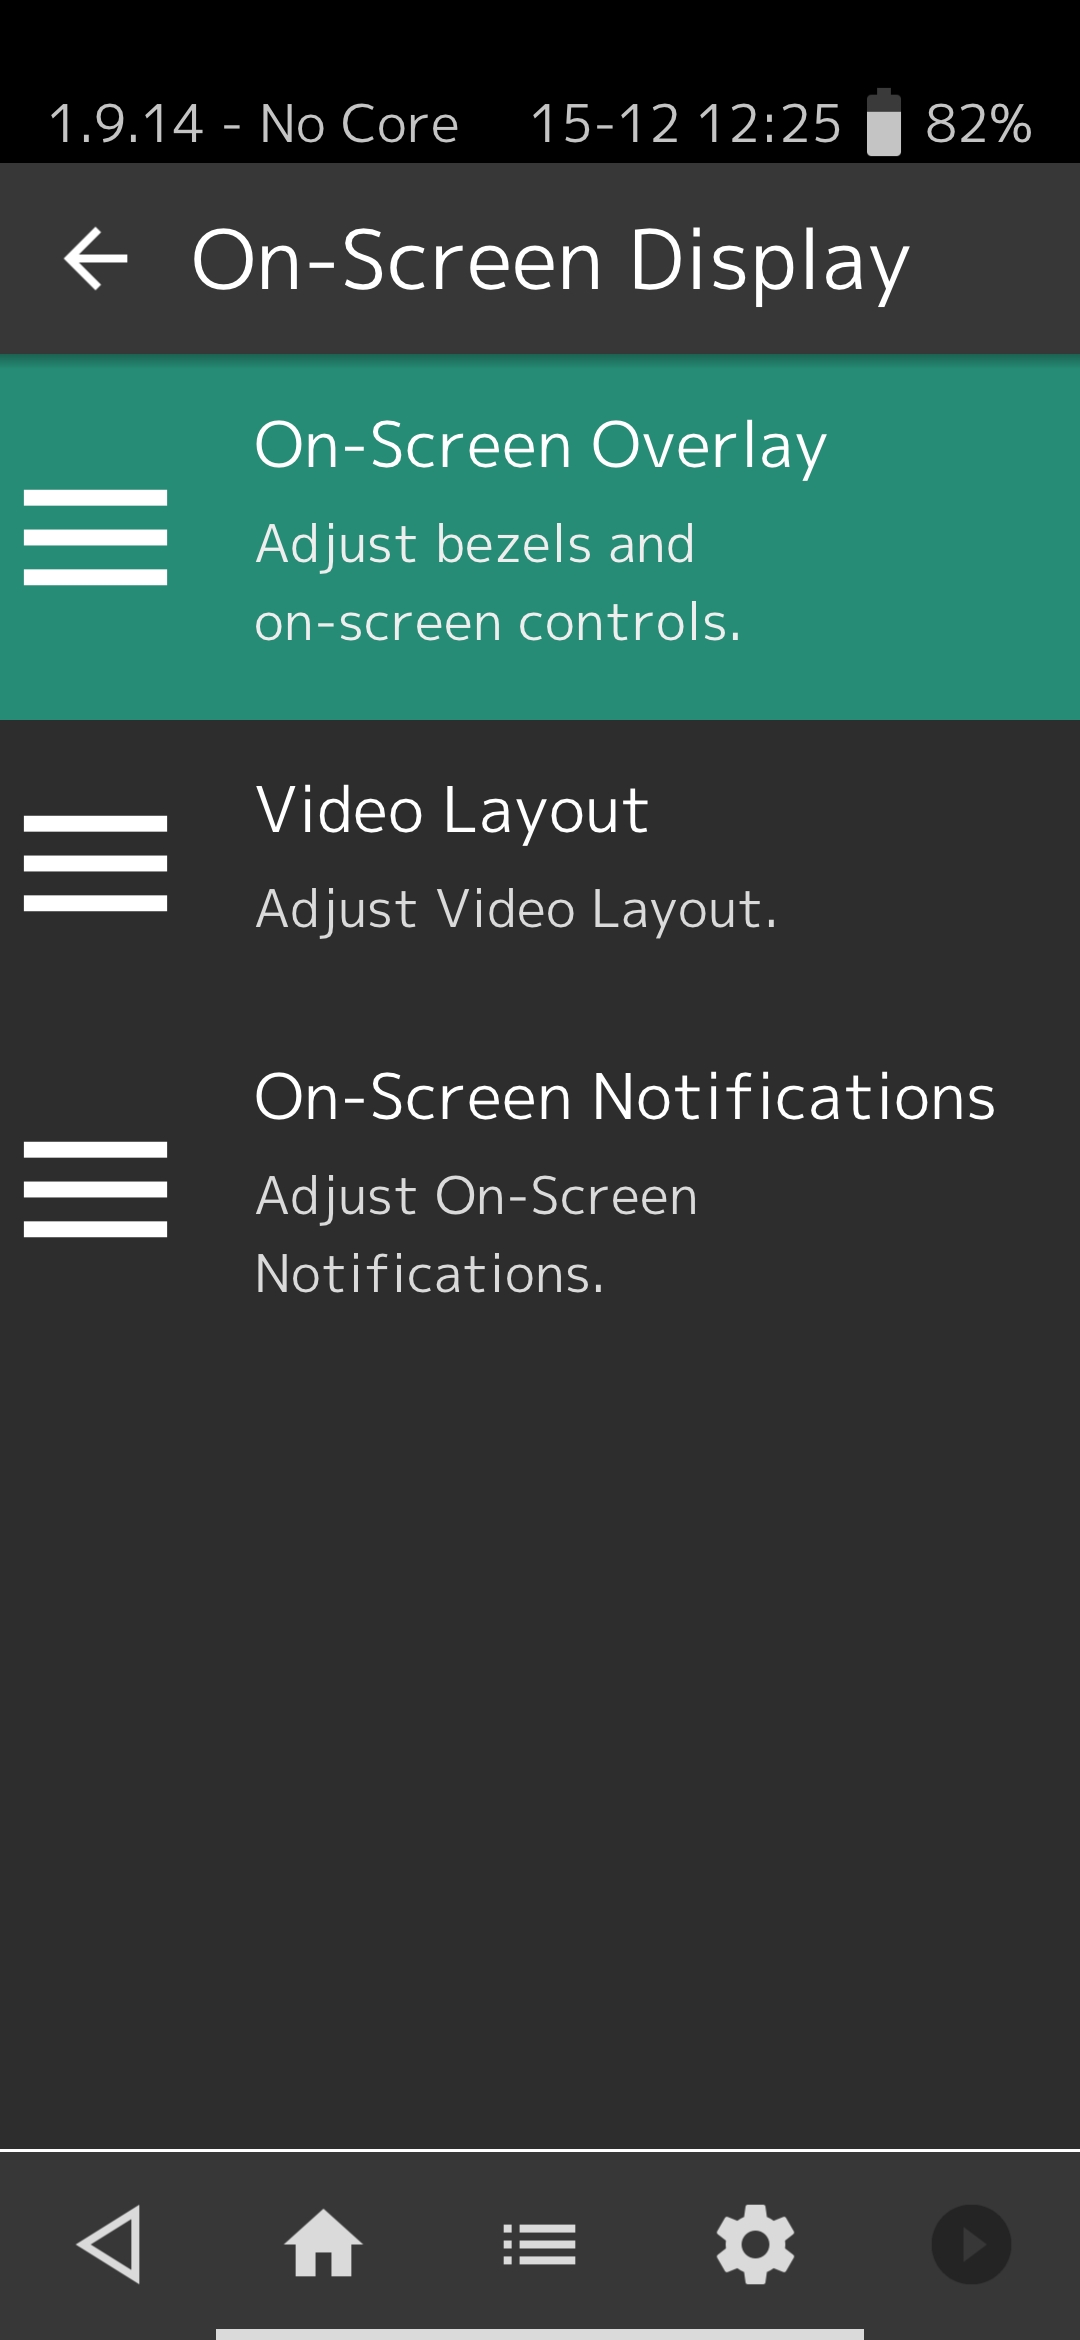 On-Screen display